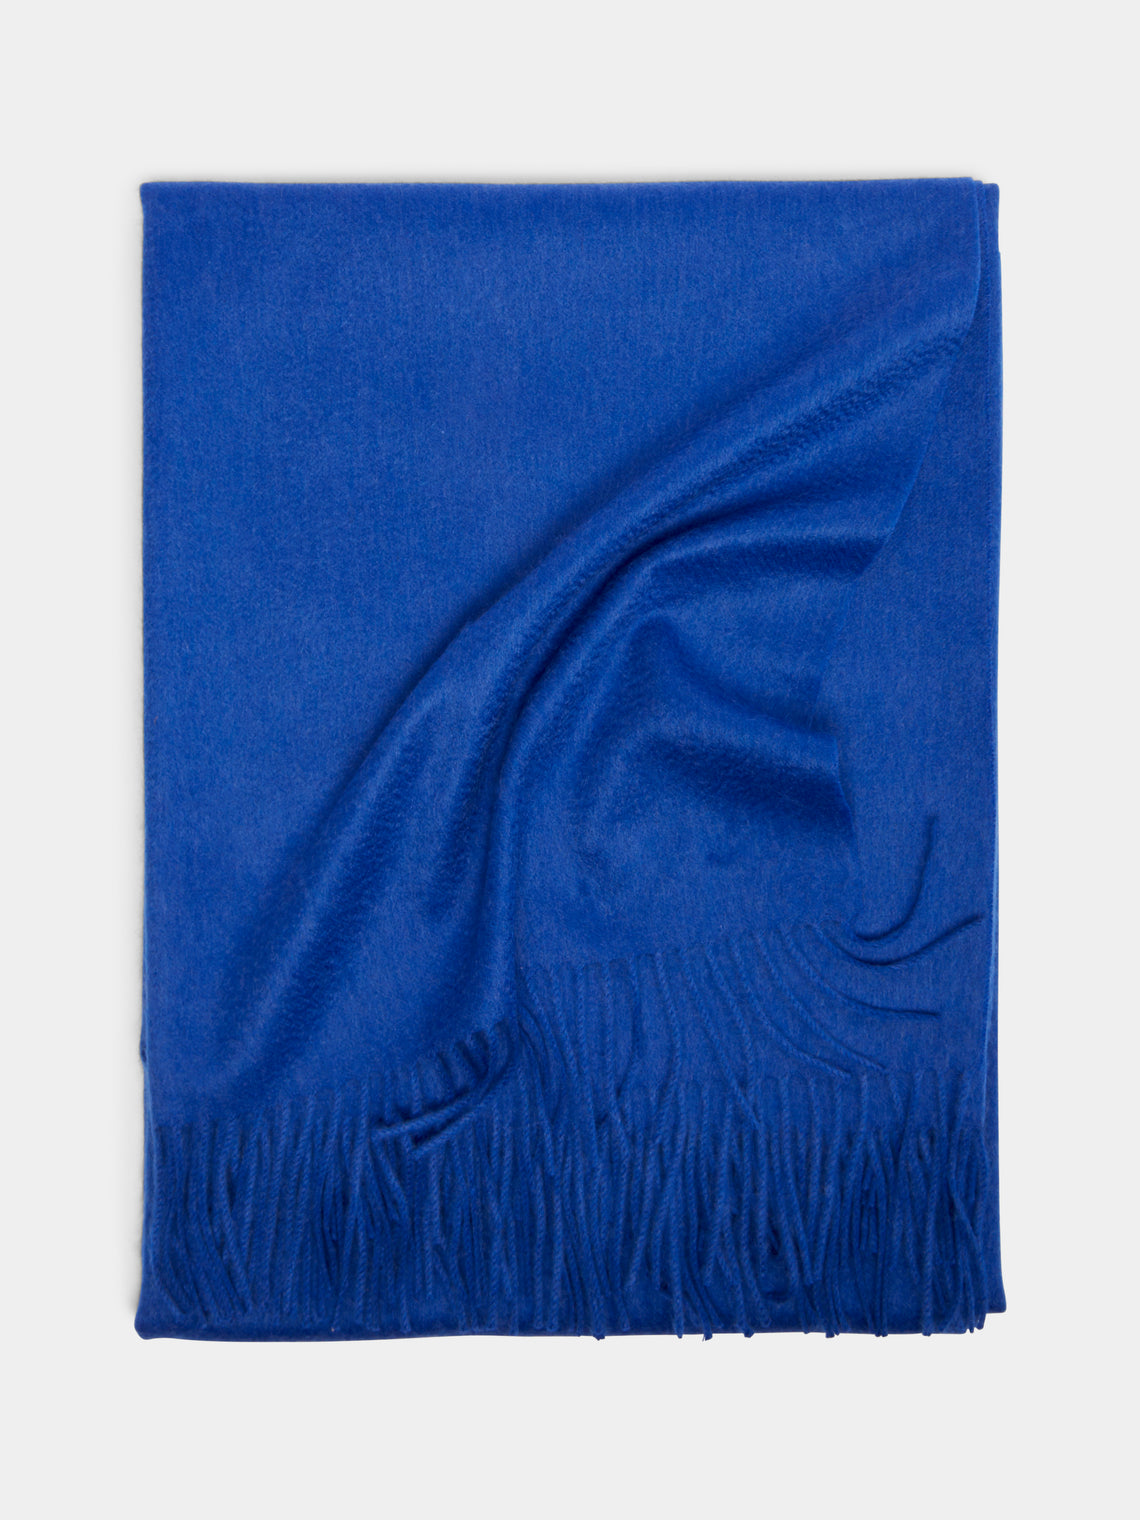 Begg x Co - Arran Cashmere Blanket - Blue - ABASK - 